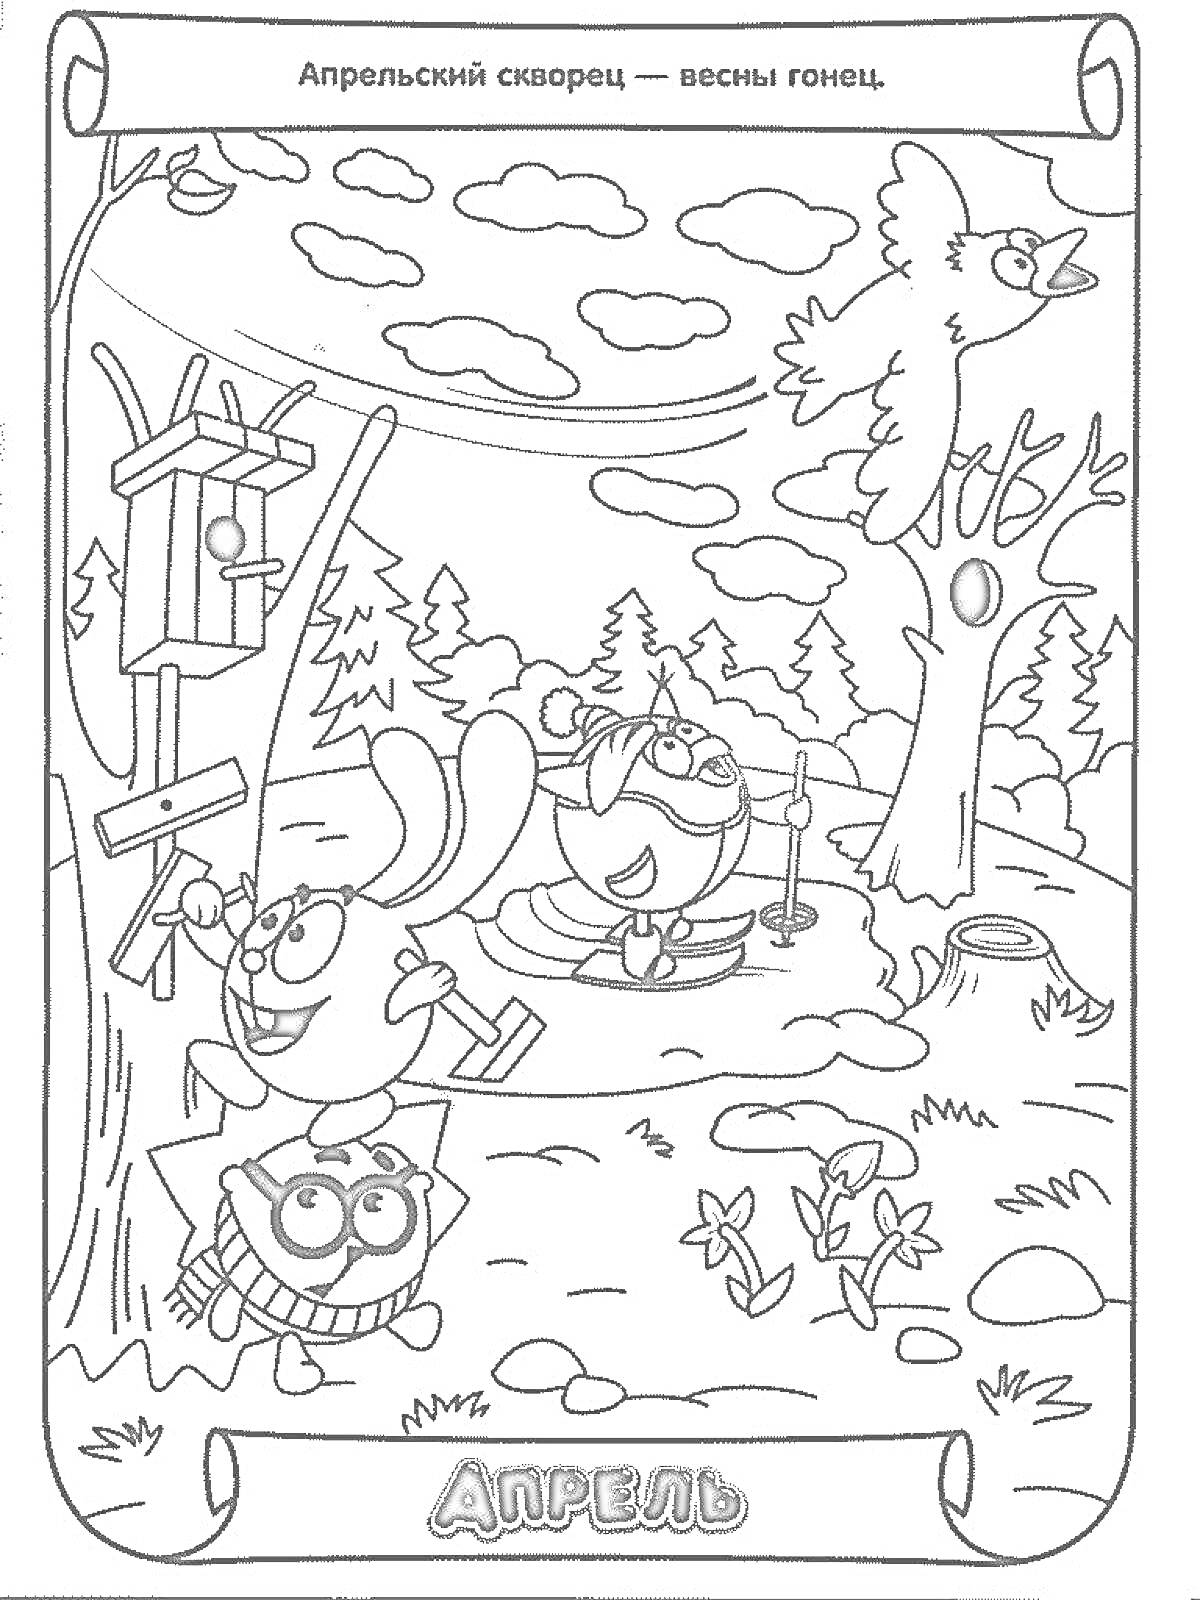 РаскраскаАпрель - три персонажа на поляне: один сидит и рисует за мольбертом, второй с лопатой копает землю и третий с лупой рассматривает цветы. На заднем плане летит птица и виден скворечник на дереве.